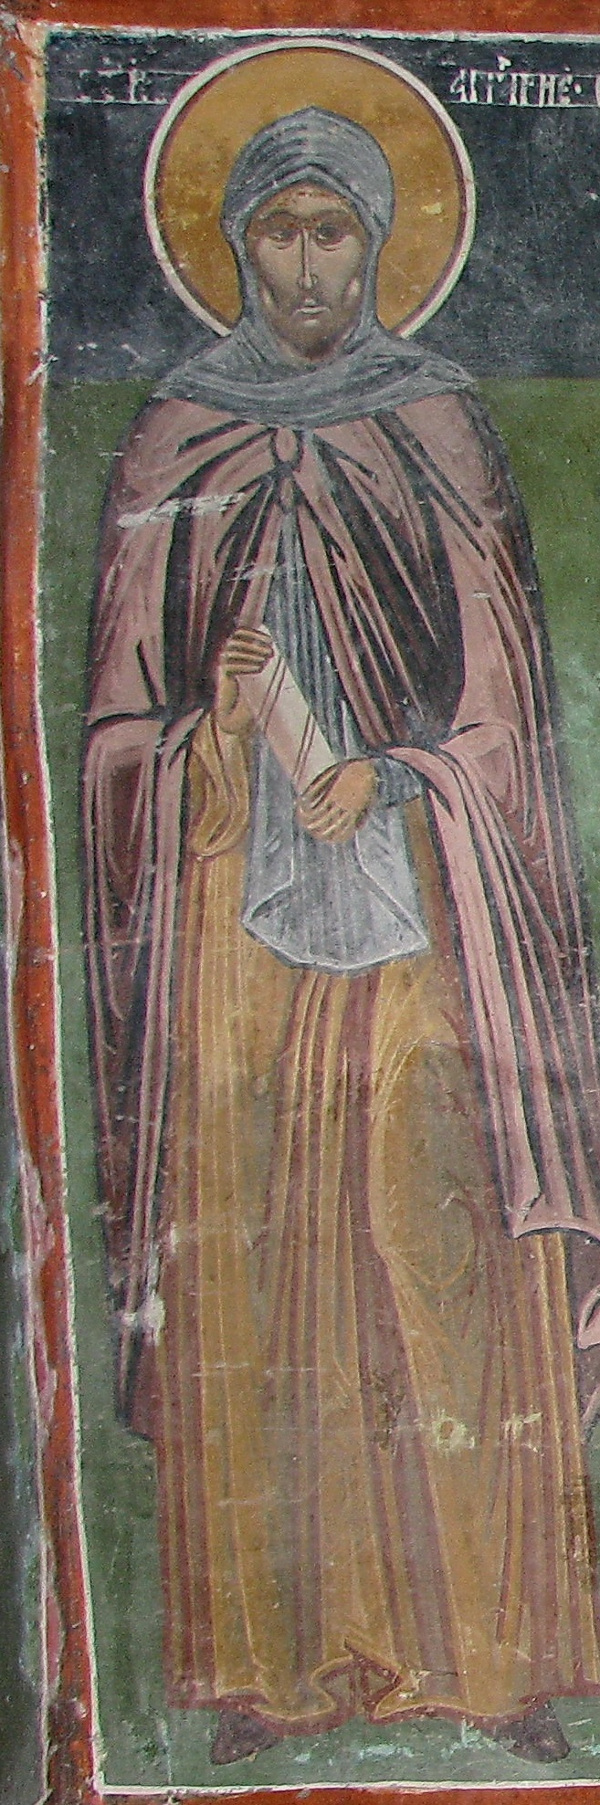 Za Angelarija se tvrdi da je umro od posljedica torture tijekom zatočeništva brzo nakon dolaska u Bugarsku, za Gorazda da je ostao kao biskup u Nitri, a ostali su otišli u Ohrid. (Izvor: Wikimedia (wikimedia.org))